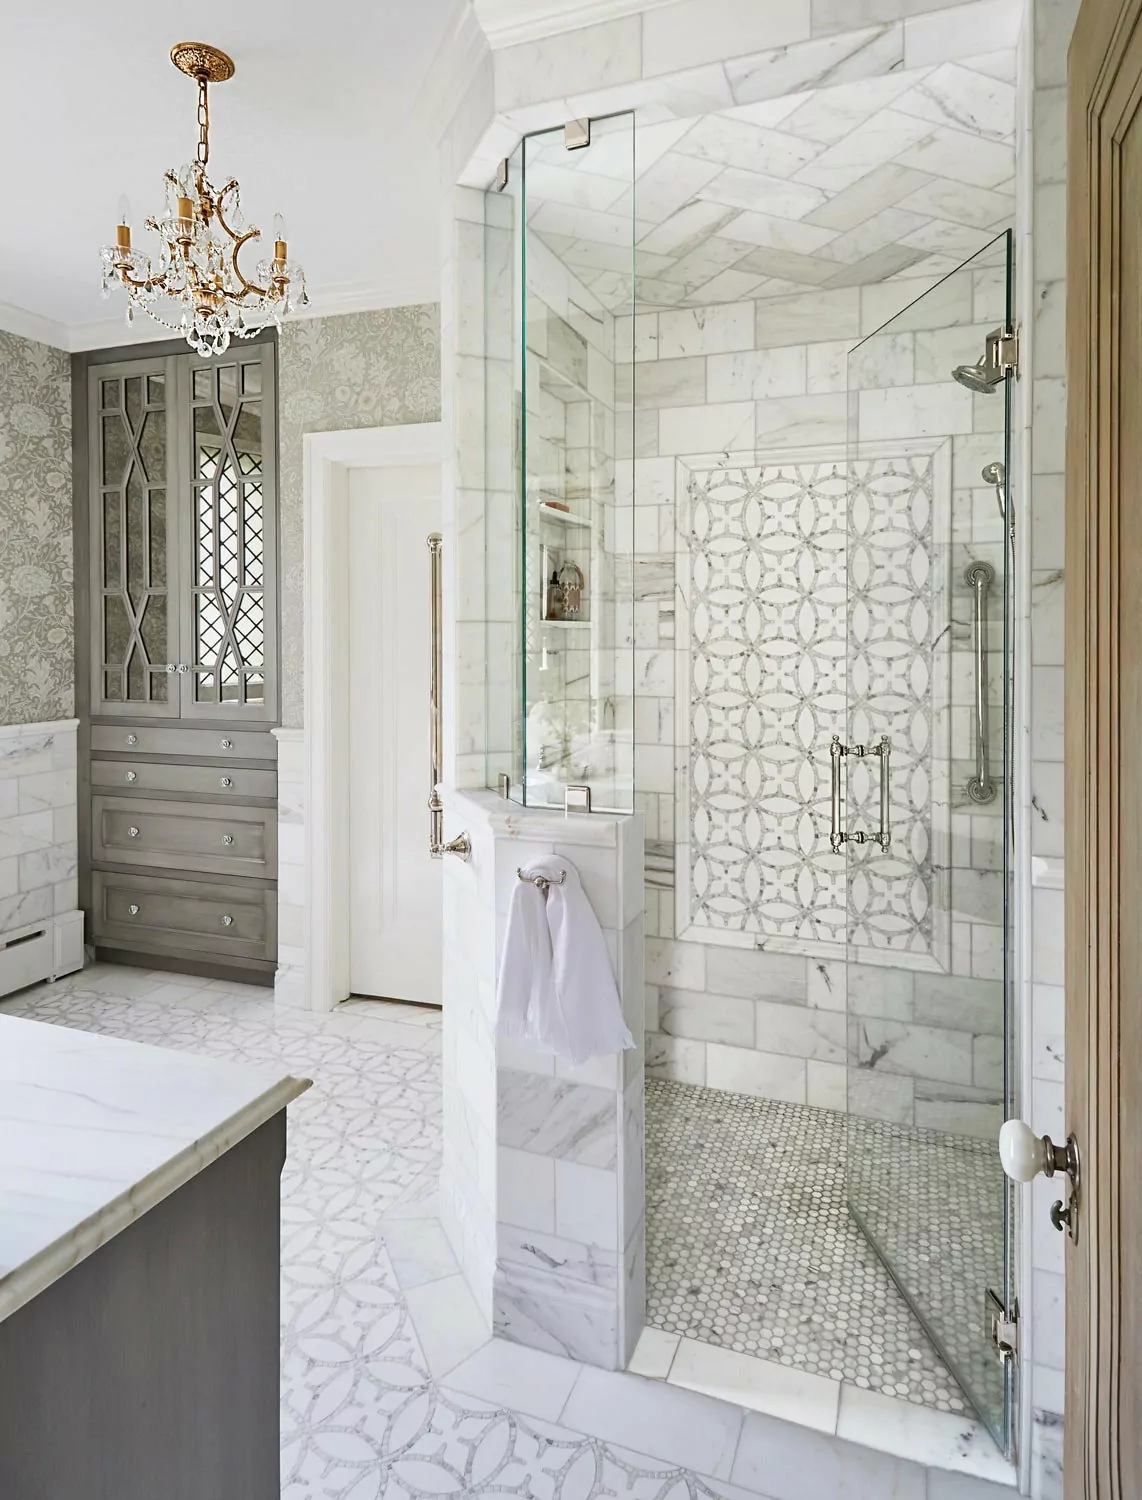 large-shower-in-bathroom-remodel.jpg